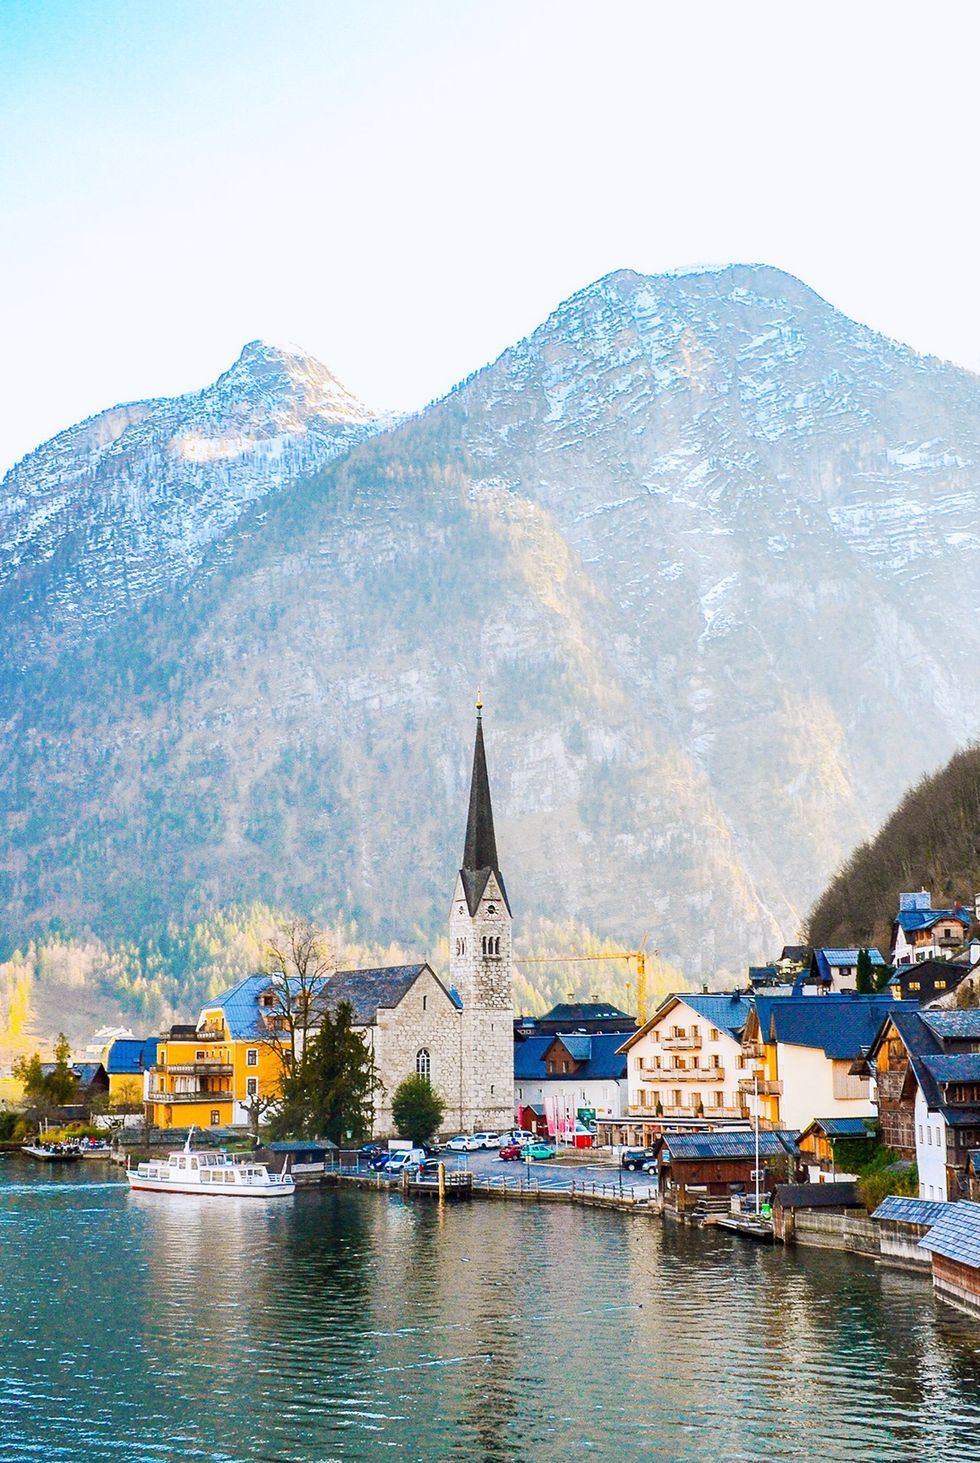 Fairytale Town of Hallstatt, Austria